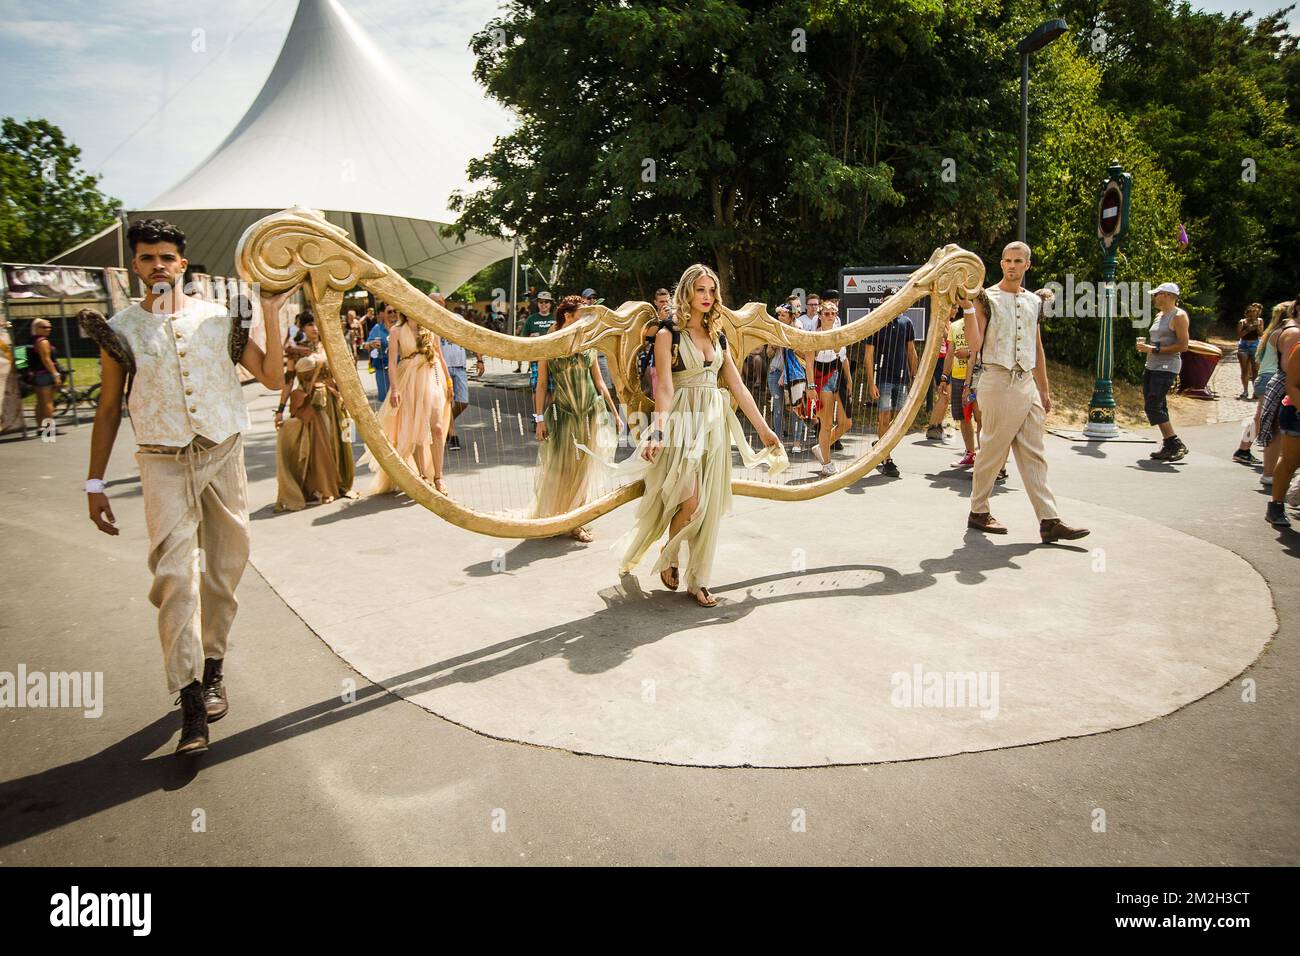 Illustration la photo montre le premier jour du festival de musique de  Tomorrowland, vendredi 20 juillet 2018. L'édition 14th du festival de  musique électronique Tomorrowland se déroule sur le terrain de Schorre